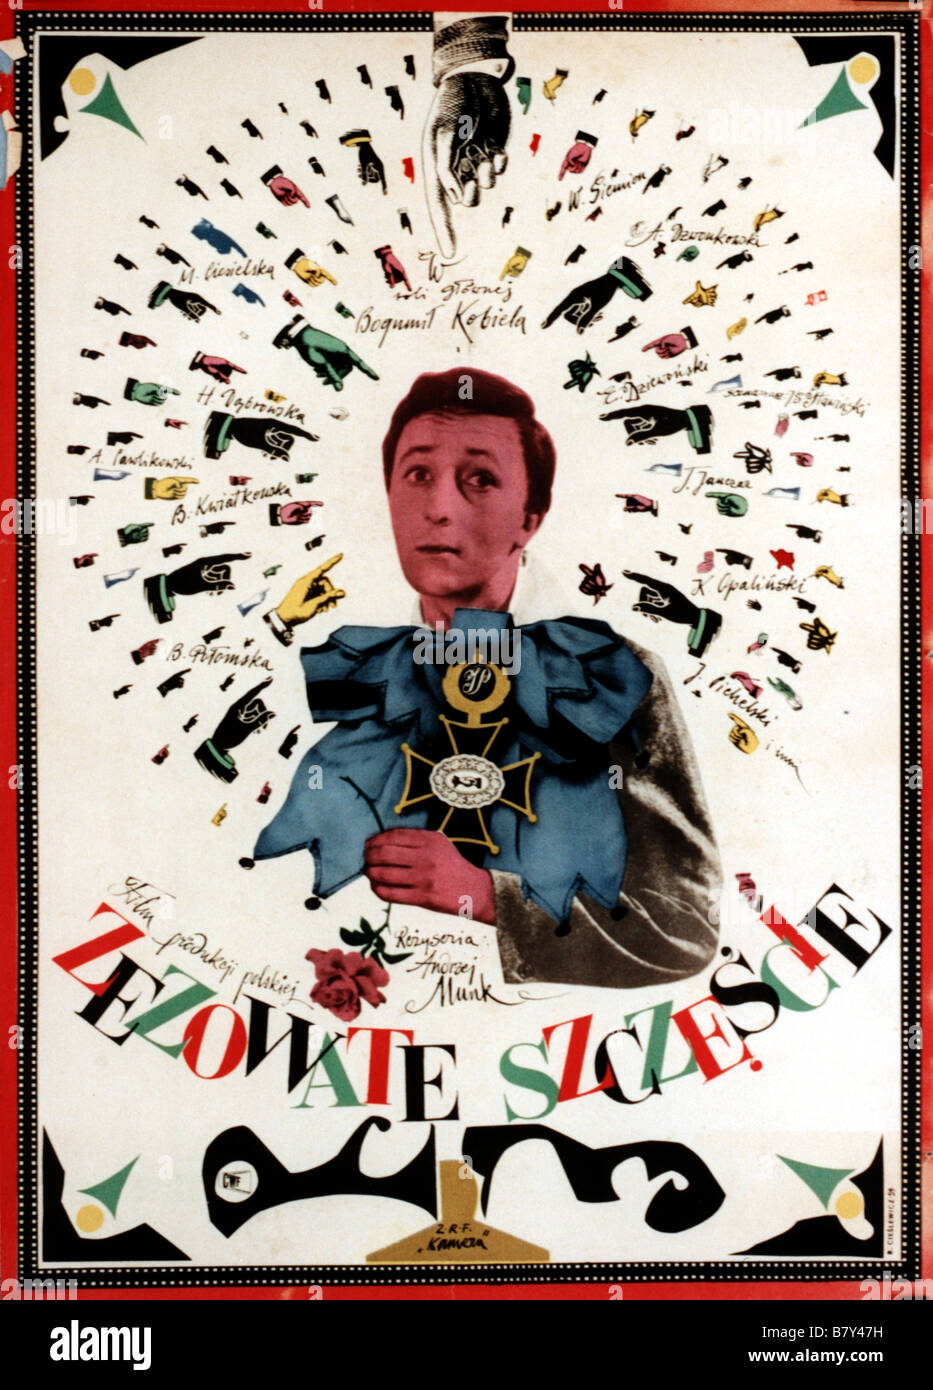 de la veine à revendre Zezowate szczescie  Year: 1960 - poland affiche polonaise, poster  Director: Andrzej Munk Stock Photo